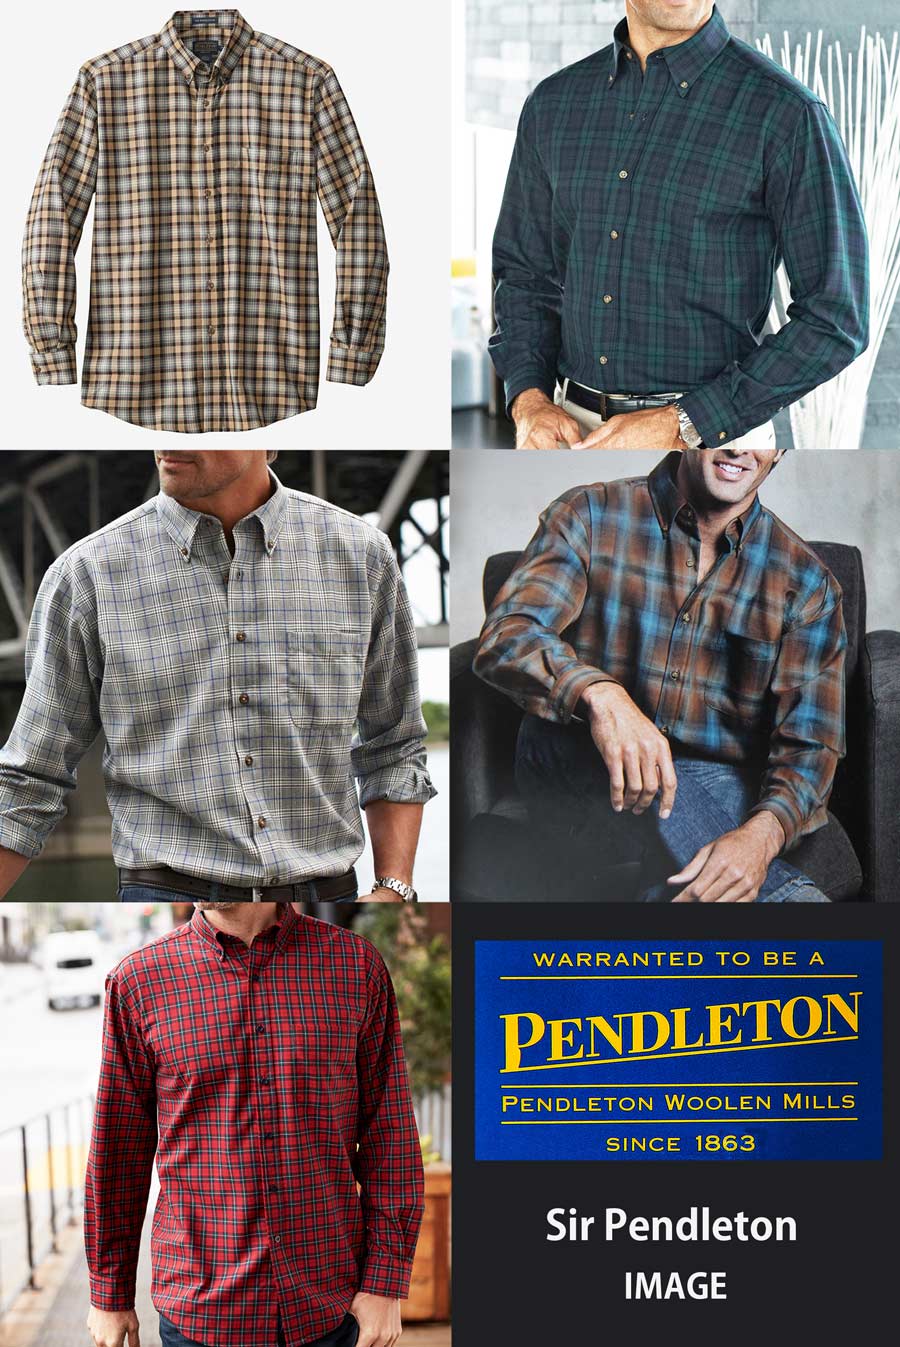 ペンドルトン サーペンドルトン ウールシャツ マクダガルタータンL/Pendleton Sir Pendleton Wool  Shirt(MacDougall Tartan)